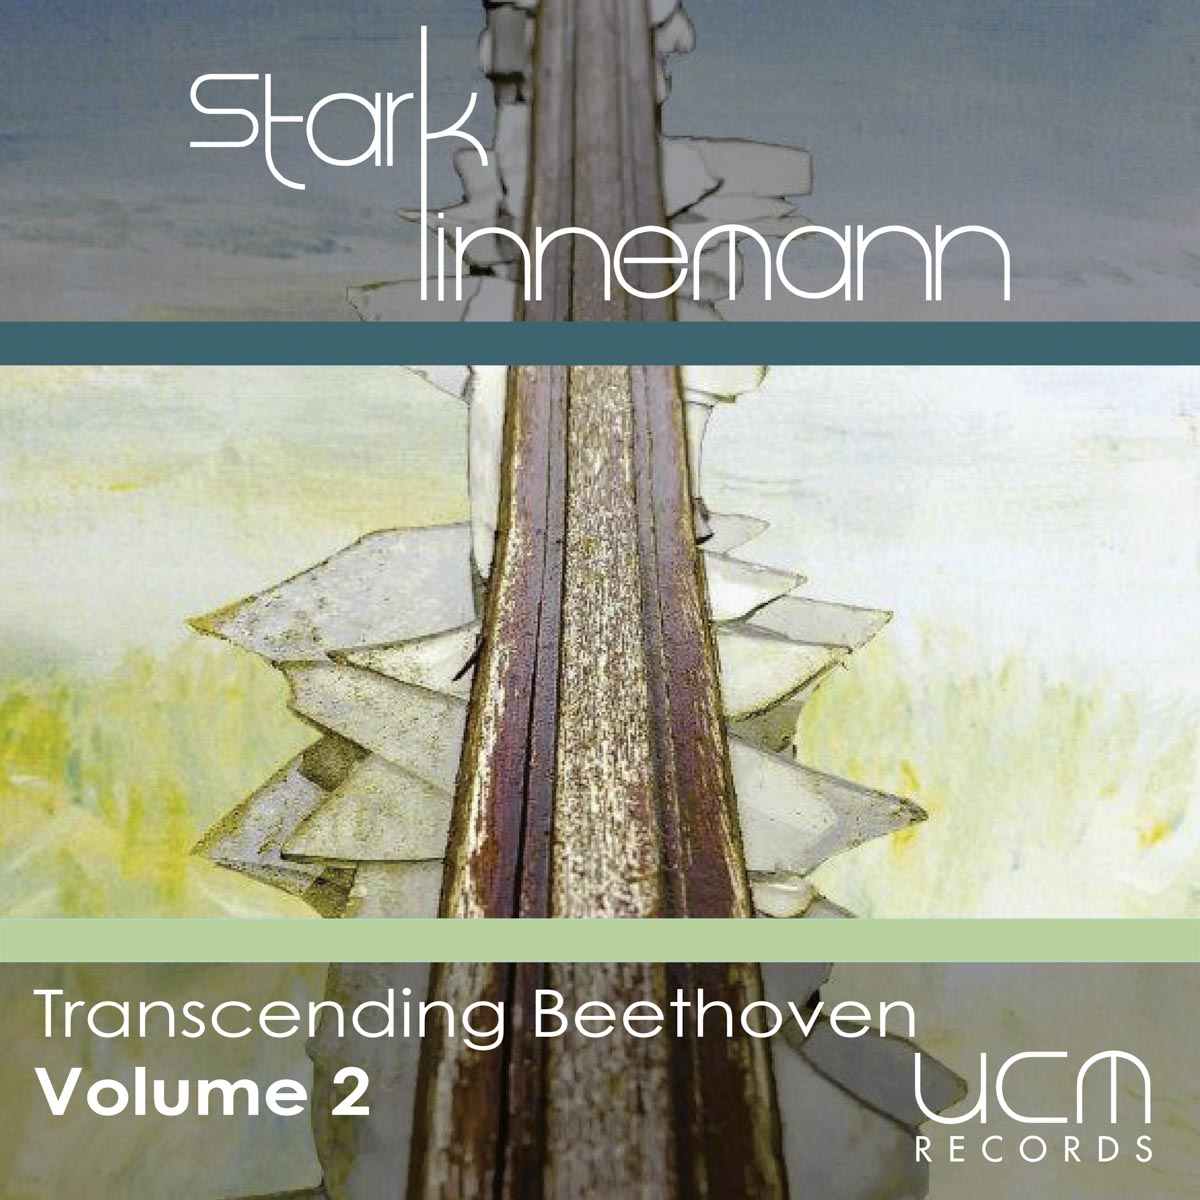 StarkLinnemann - Transcending Beethoven Volume 2